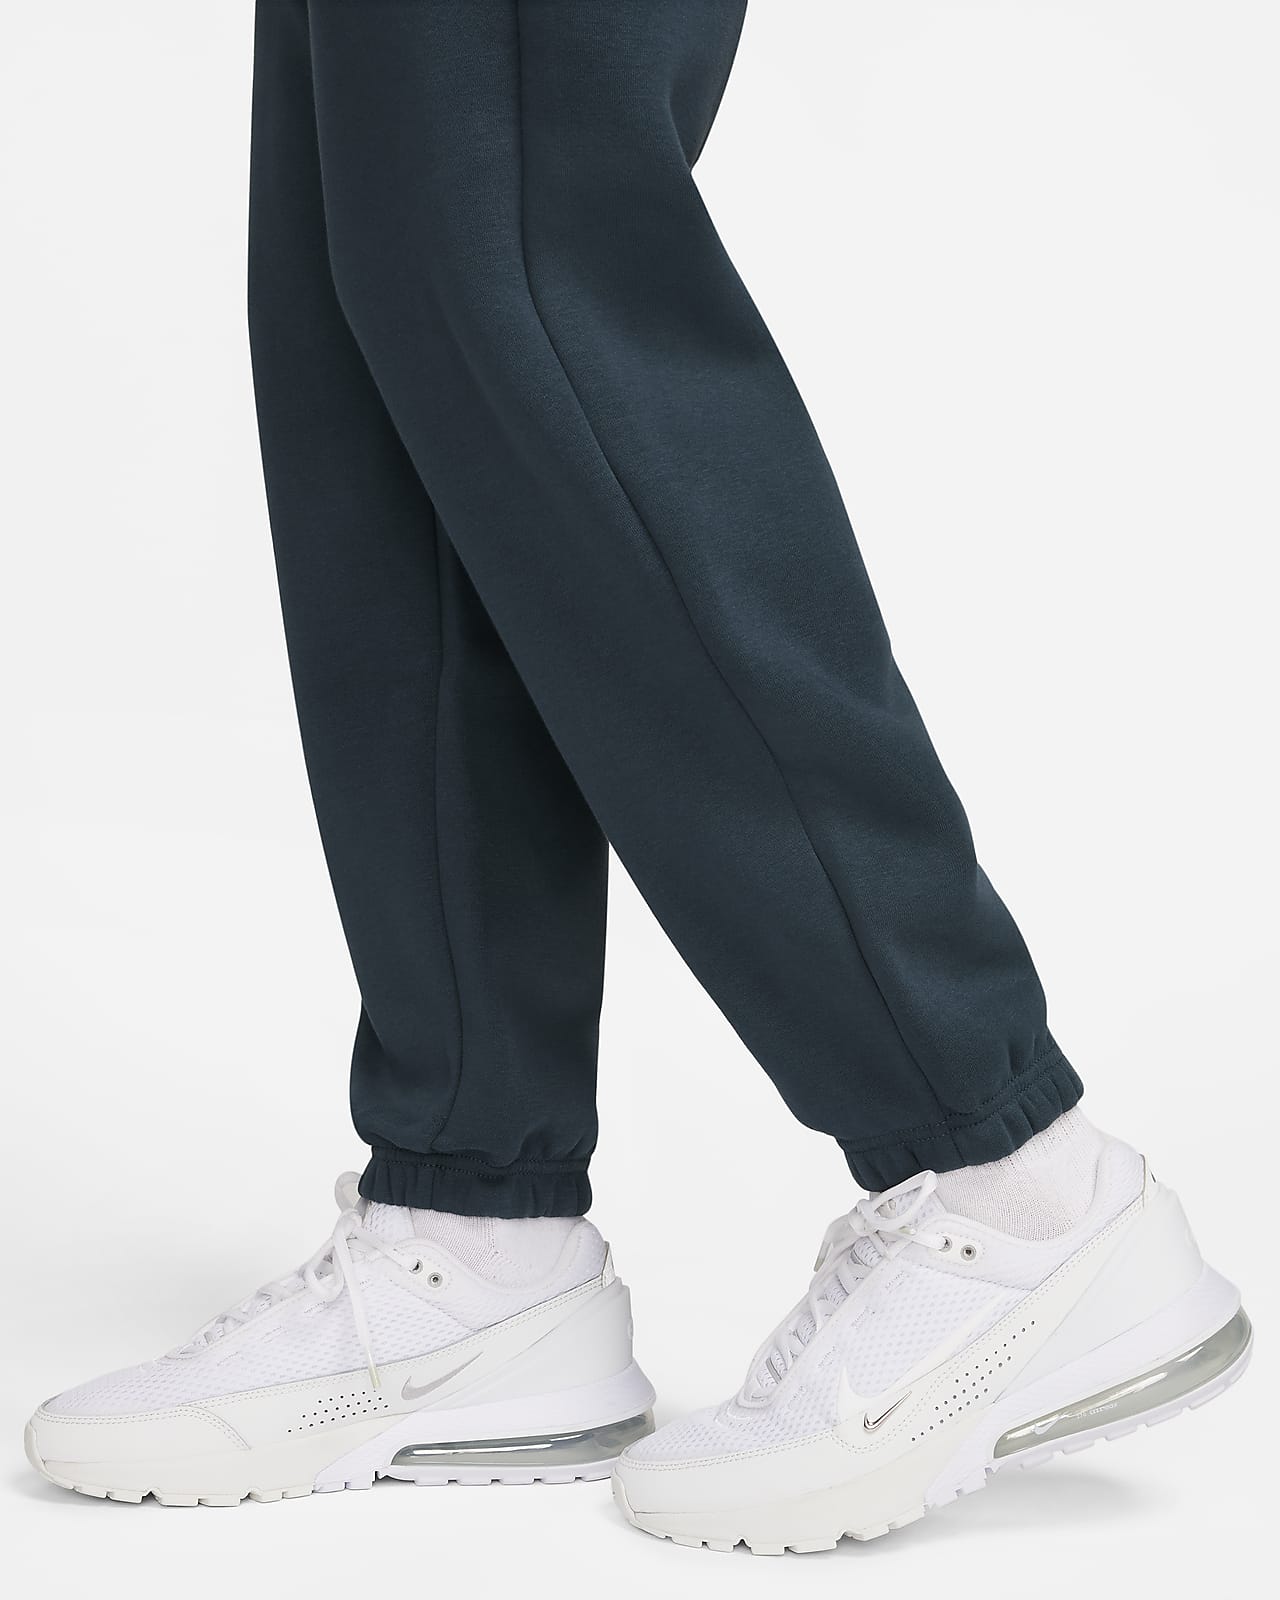 Nike Sportswear Women's High-Waisted Oversized Fleece Sweatpants